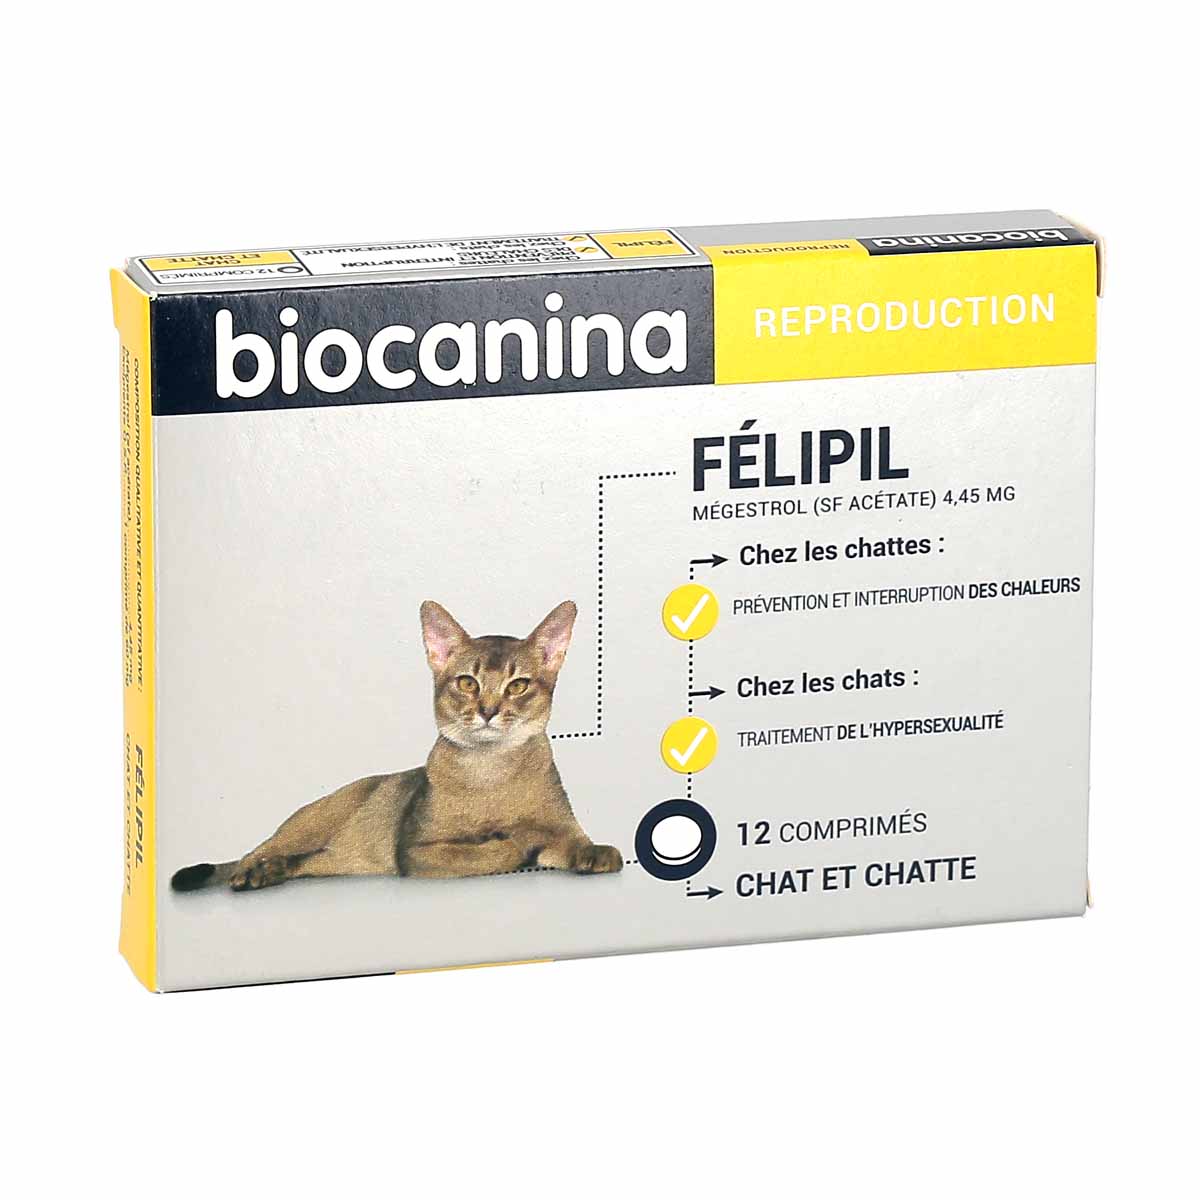 Biocanina FELIPIL reproduction - 6 comprimés